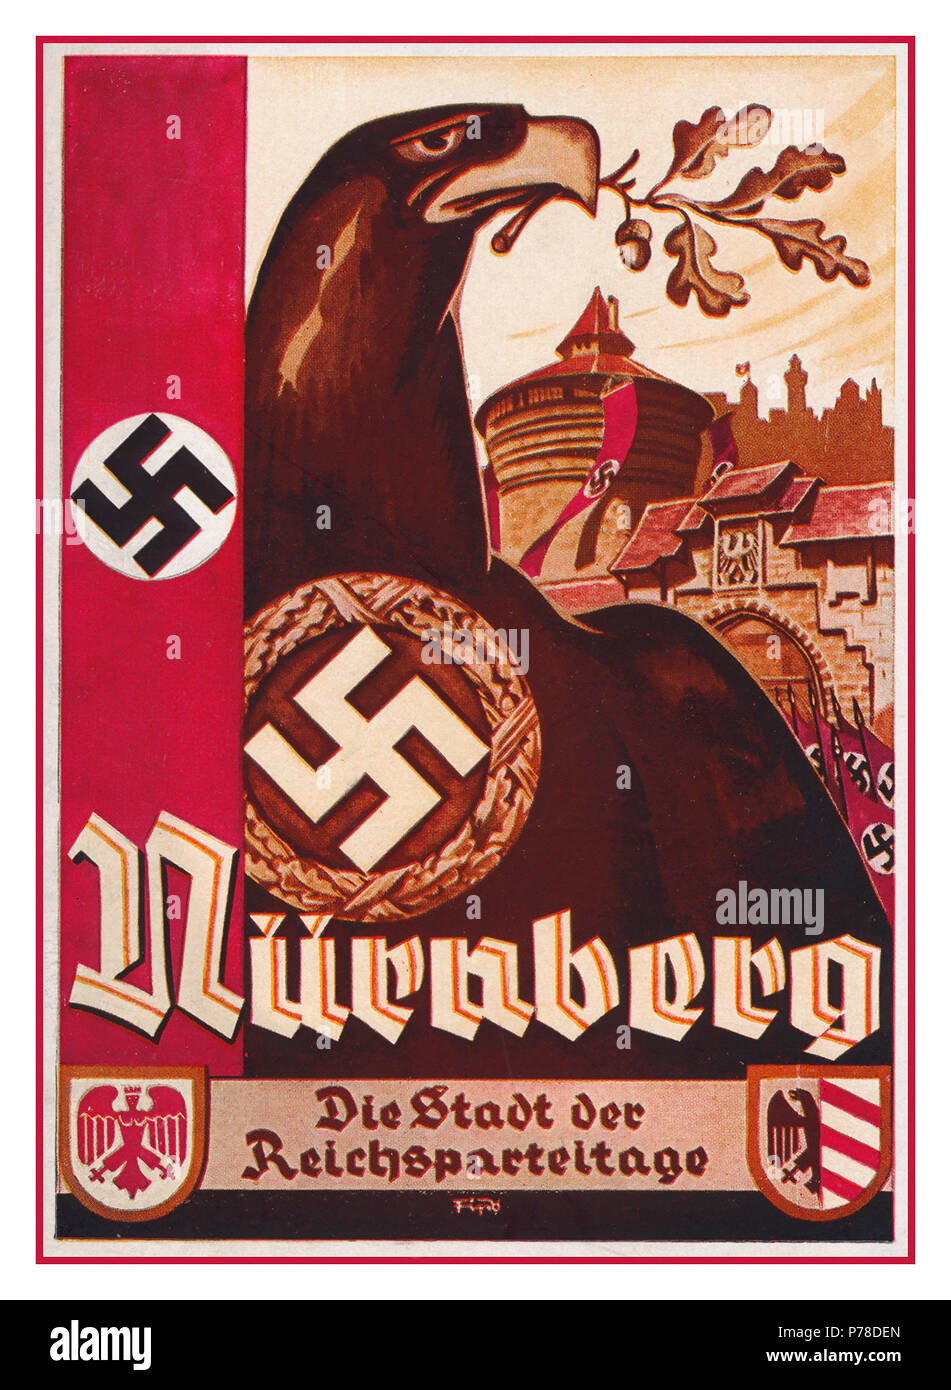 Jahrgang 1930 des nationalsozialistischen Deutschland Propaganda Postkarte "Stadt der Reichsparteitage" mit Hakenkreuz Flagge und der Deutsche Adler Stockfoto